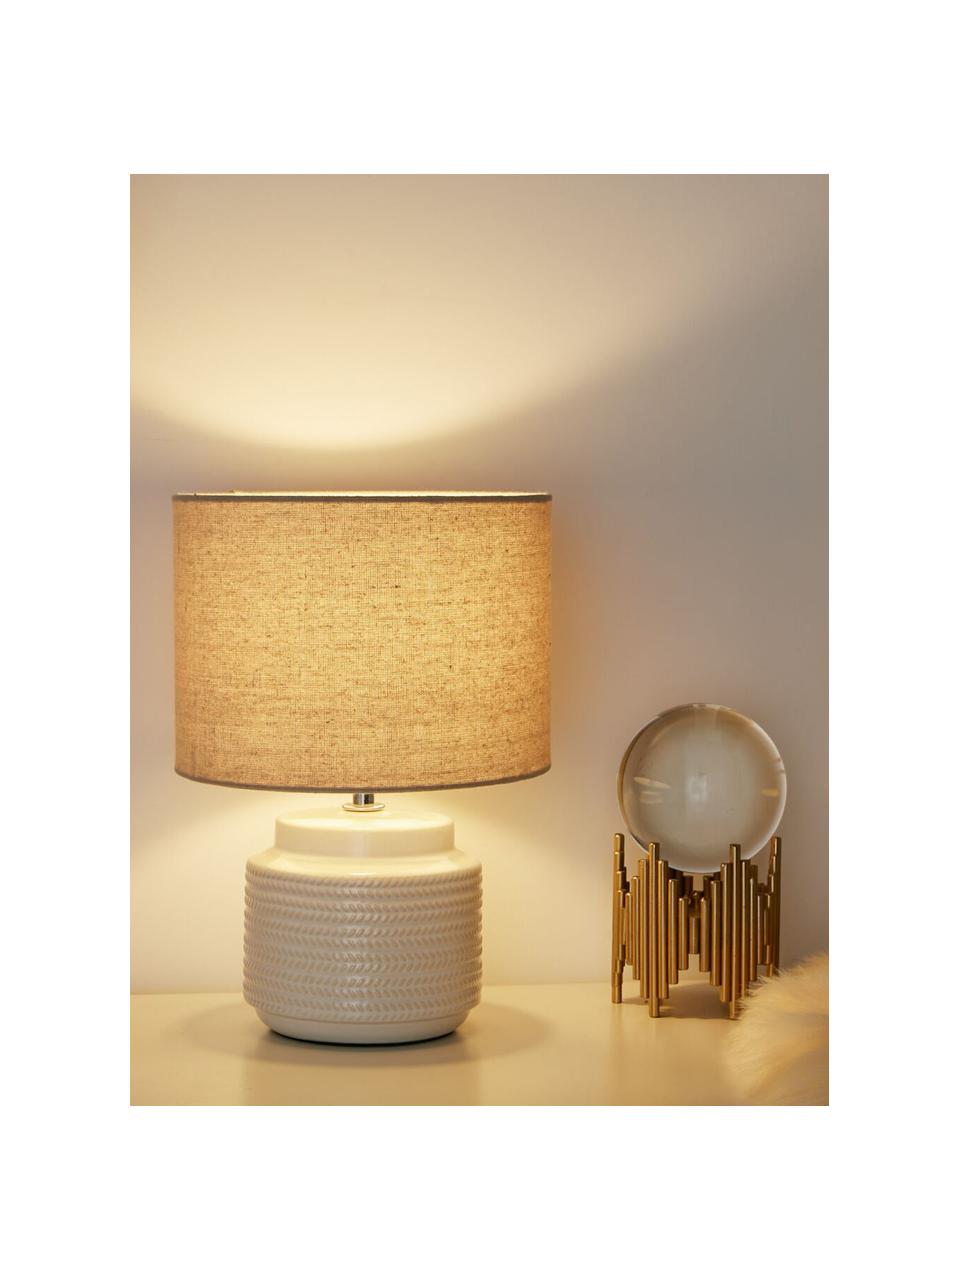 Kleine Tischlampe Bright Soul, Lampenschirm: Stoff, Lampenfuß: Keramik, Beige, Cremeweiß, Ø 18 x H 30 cm